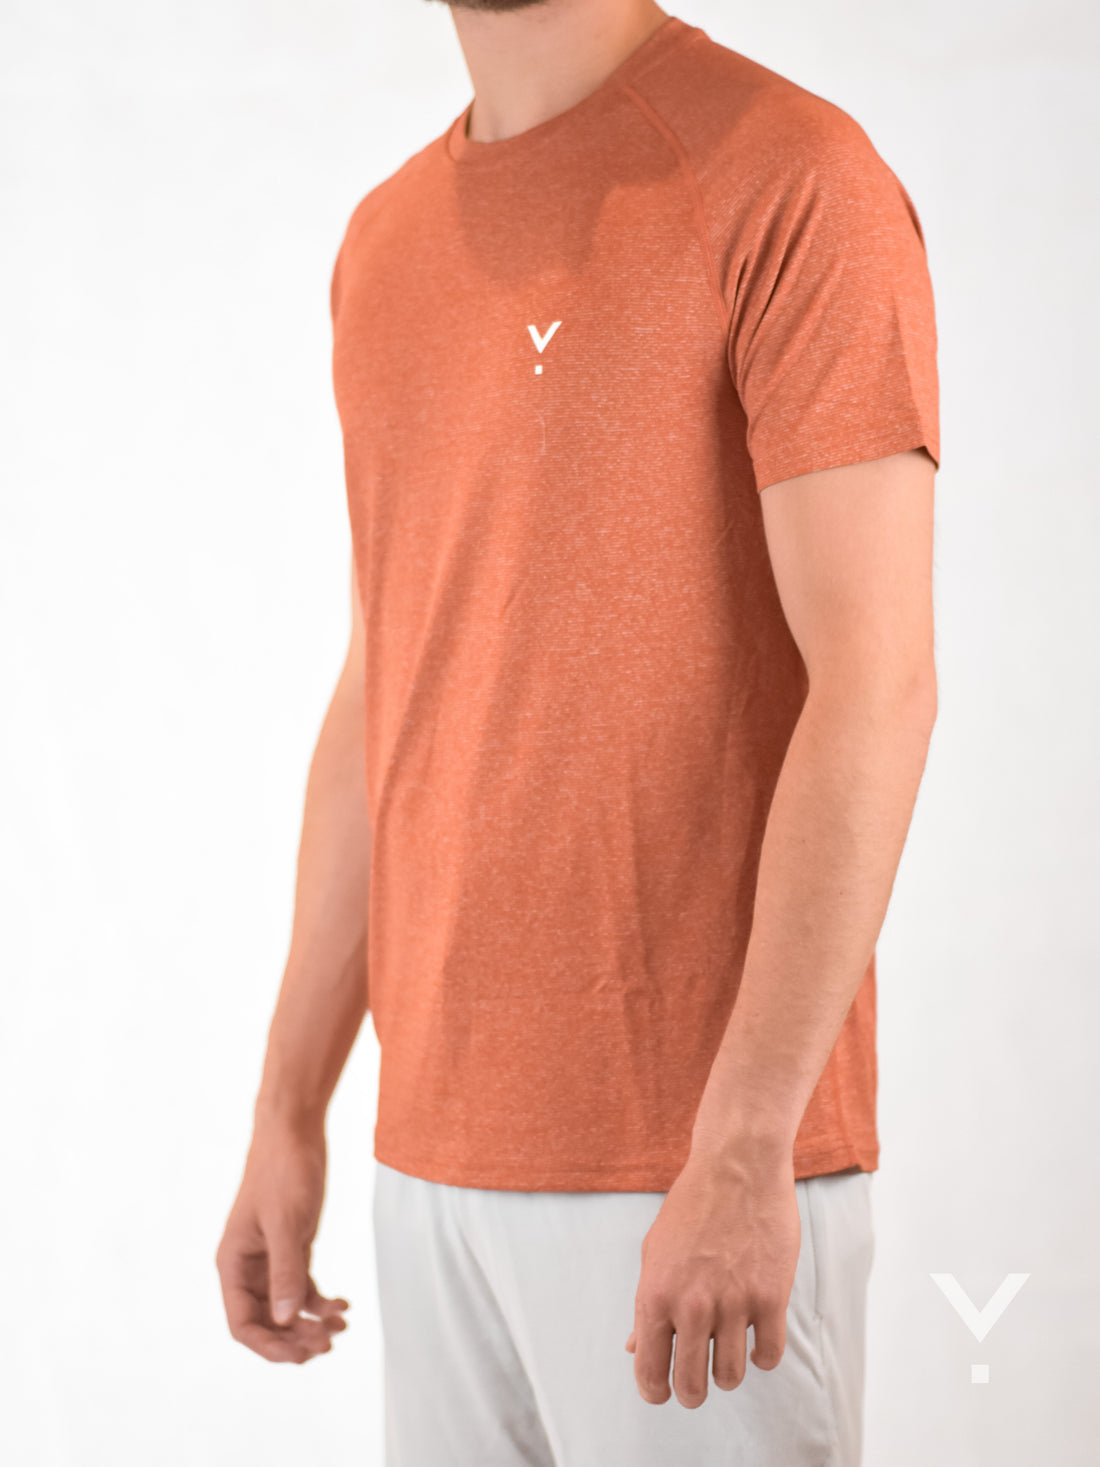 Bold T-Shirt Orange - Mens T-shirts | AVAYOS